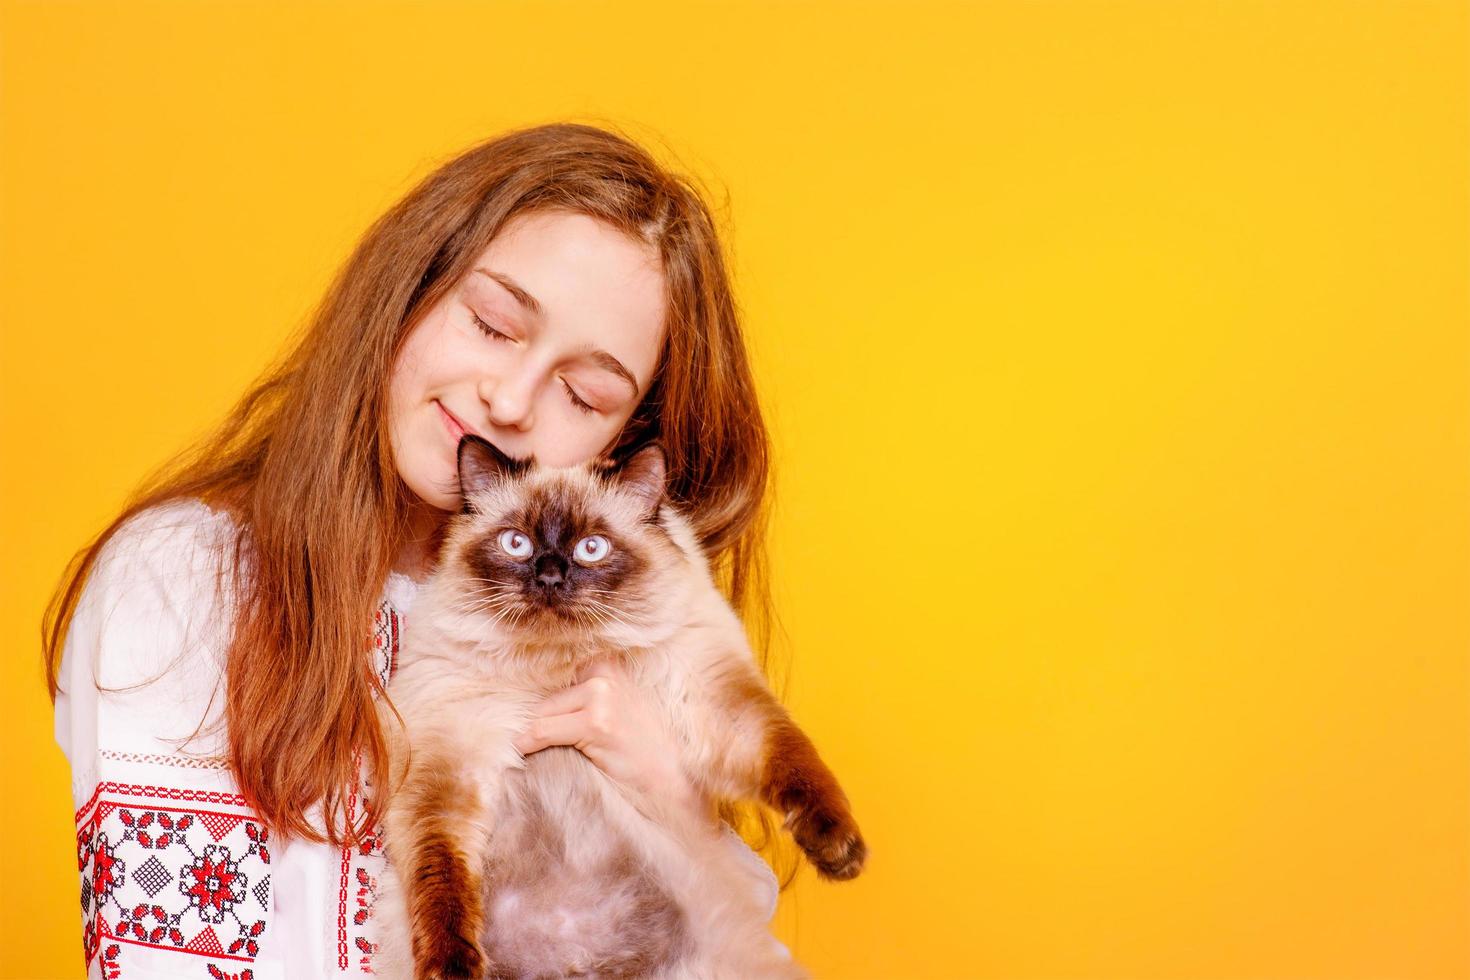 tienermeisje met een kat in haar armen. meisje op een gele achtergrond. het kind in een geborduurd overhemd. foto